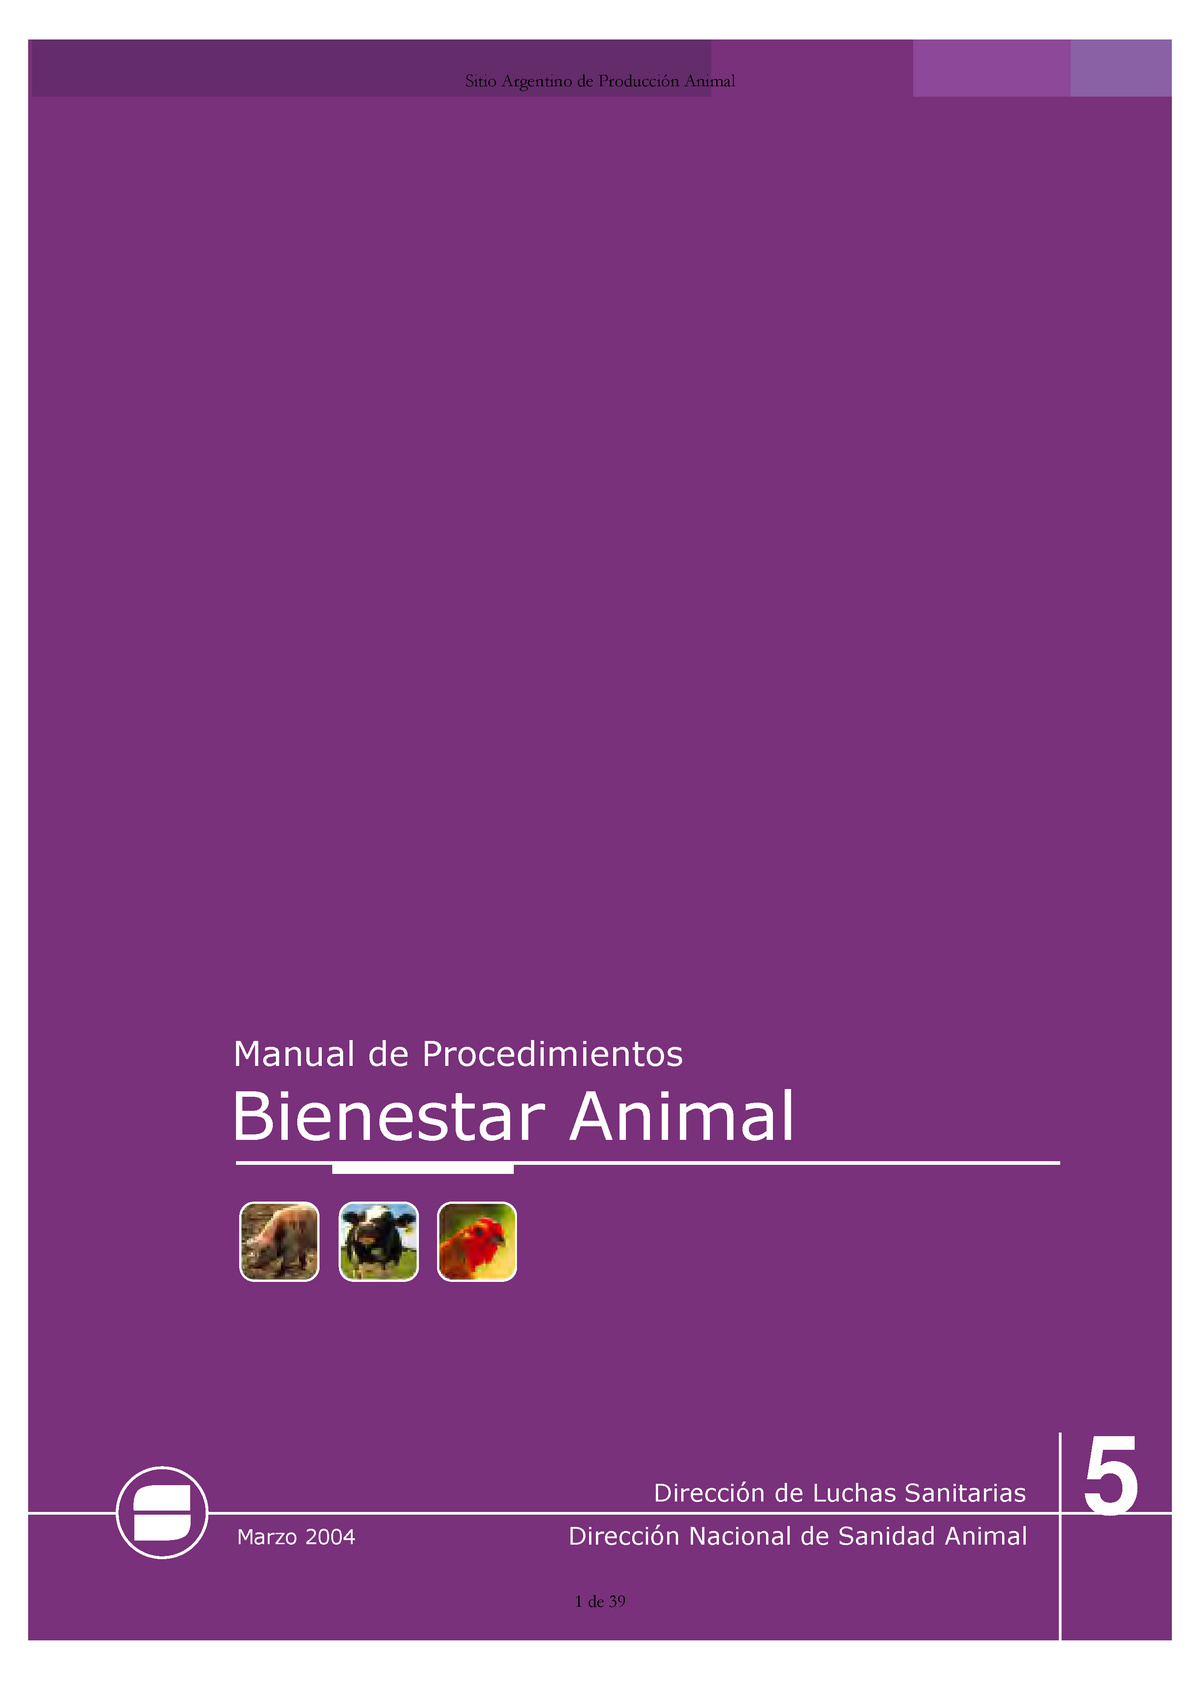 06-manual procedimientos bienestar animal - Ma n u a l d e Pr o c e d im ie  n t o s Ma r z o 2 0 0 4 - Studocu